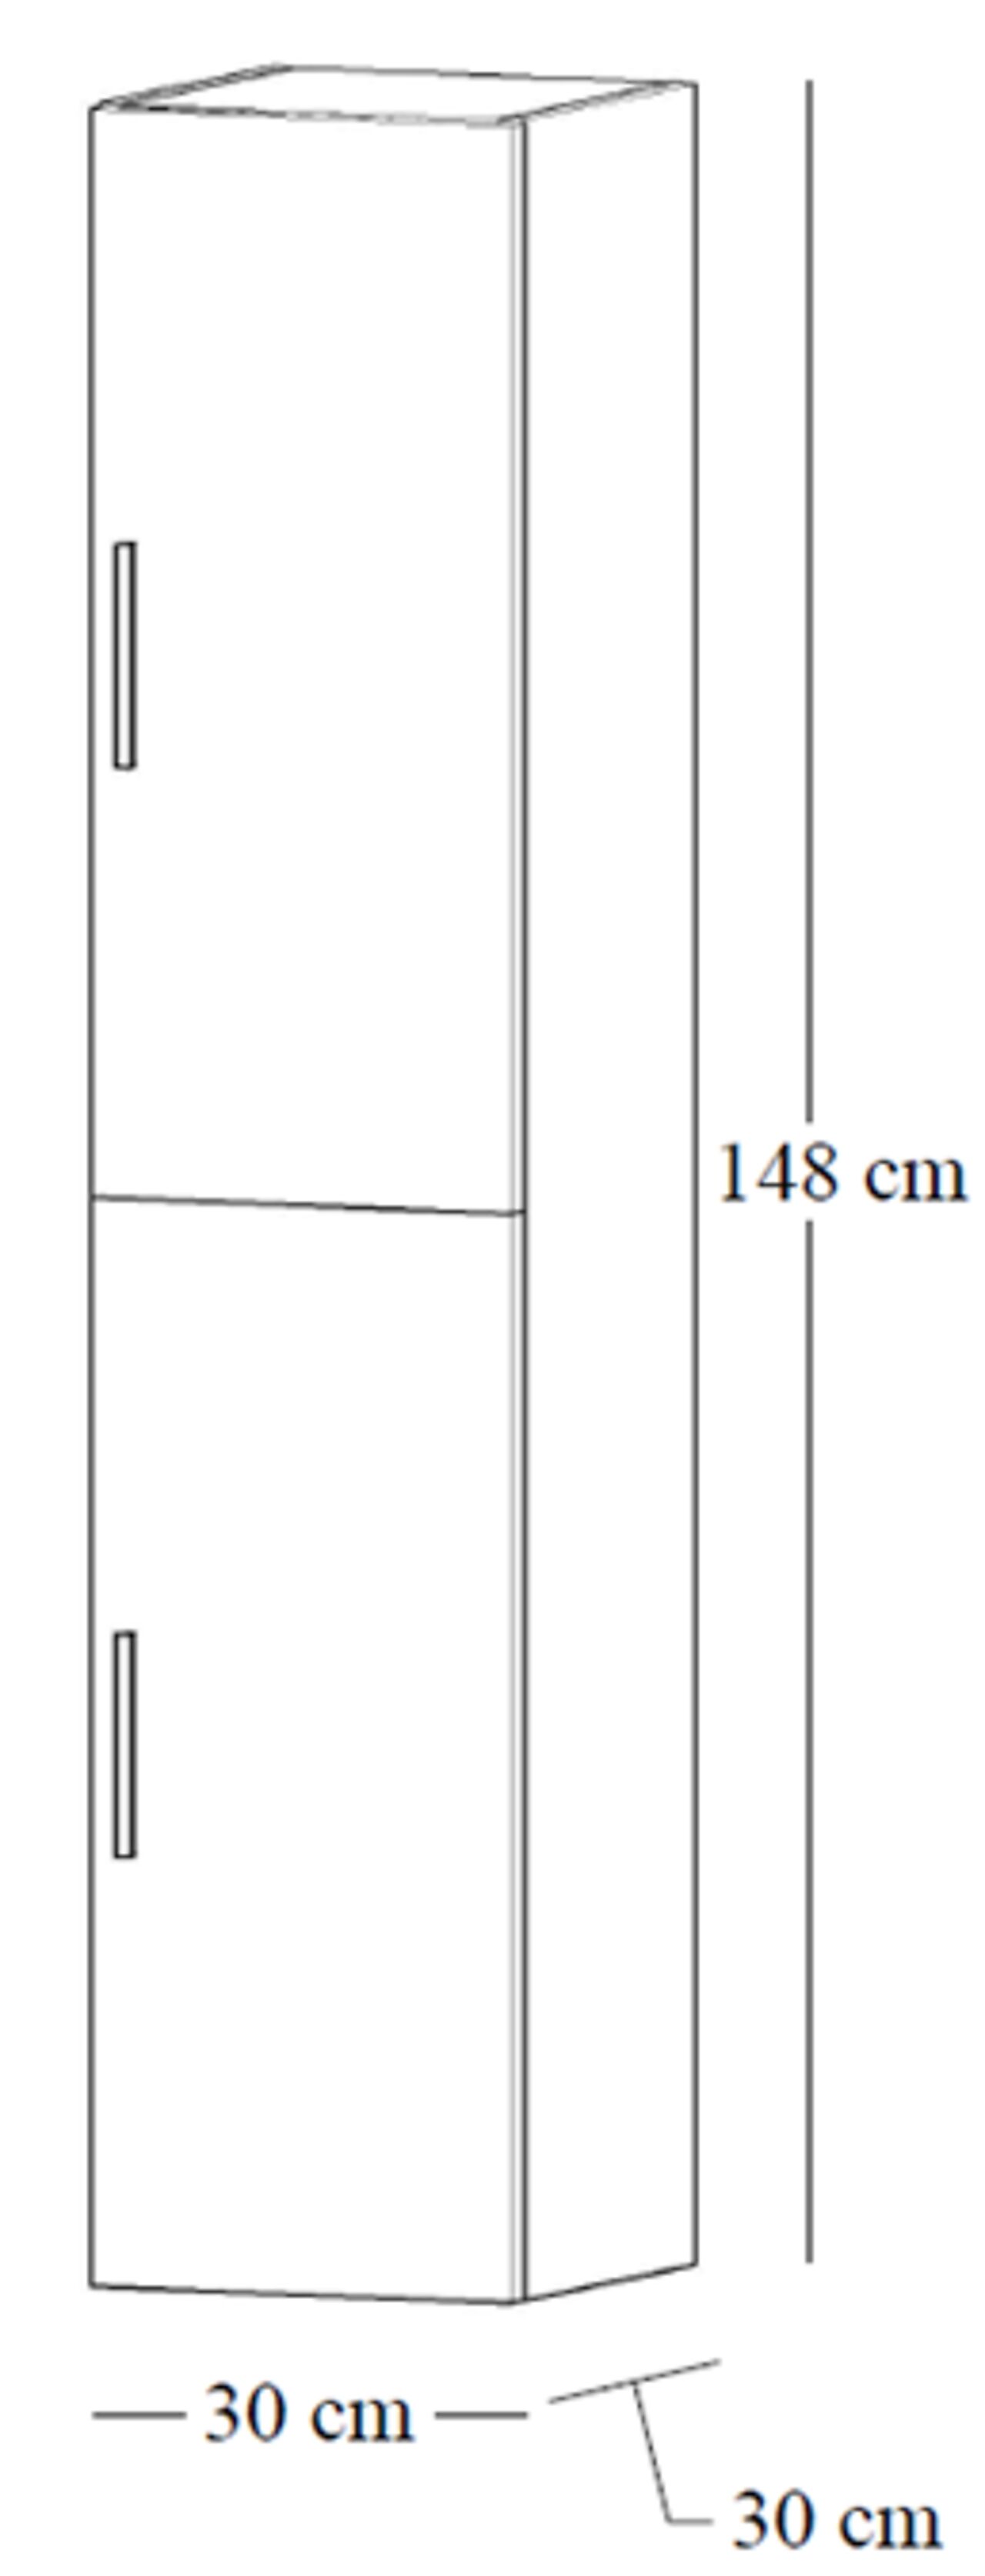 Alterna Alterna Malin 30 cm høyskap med 2 dører hvit høyglans 1